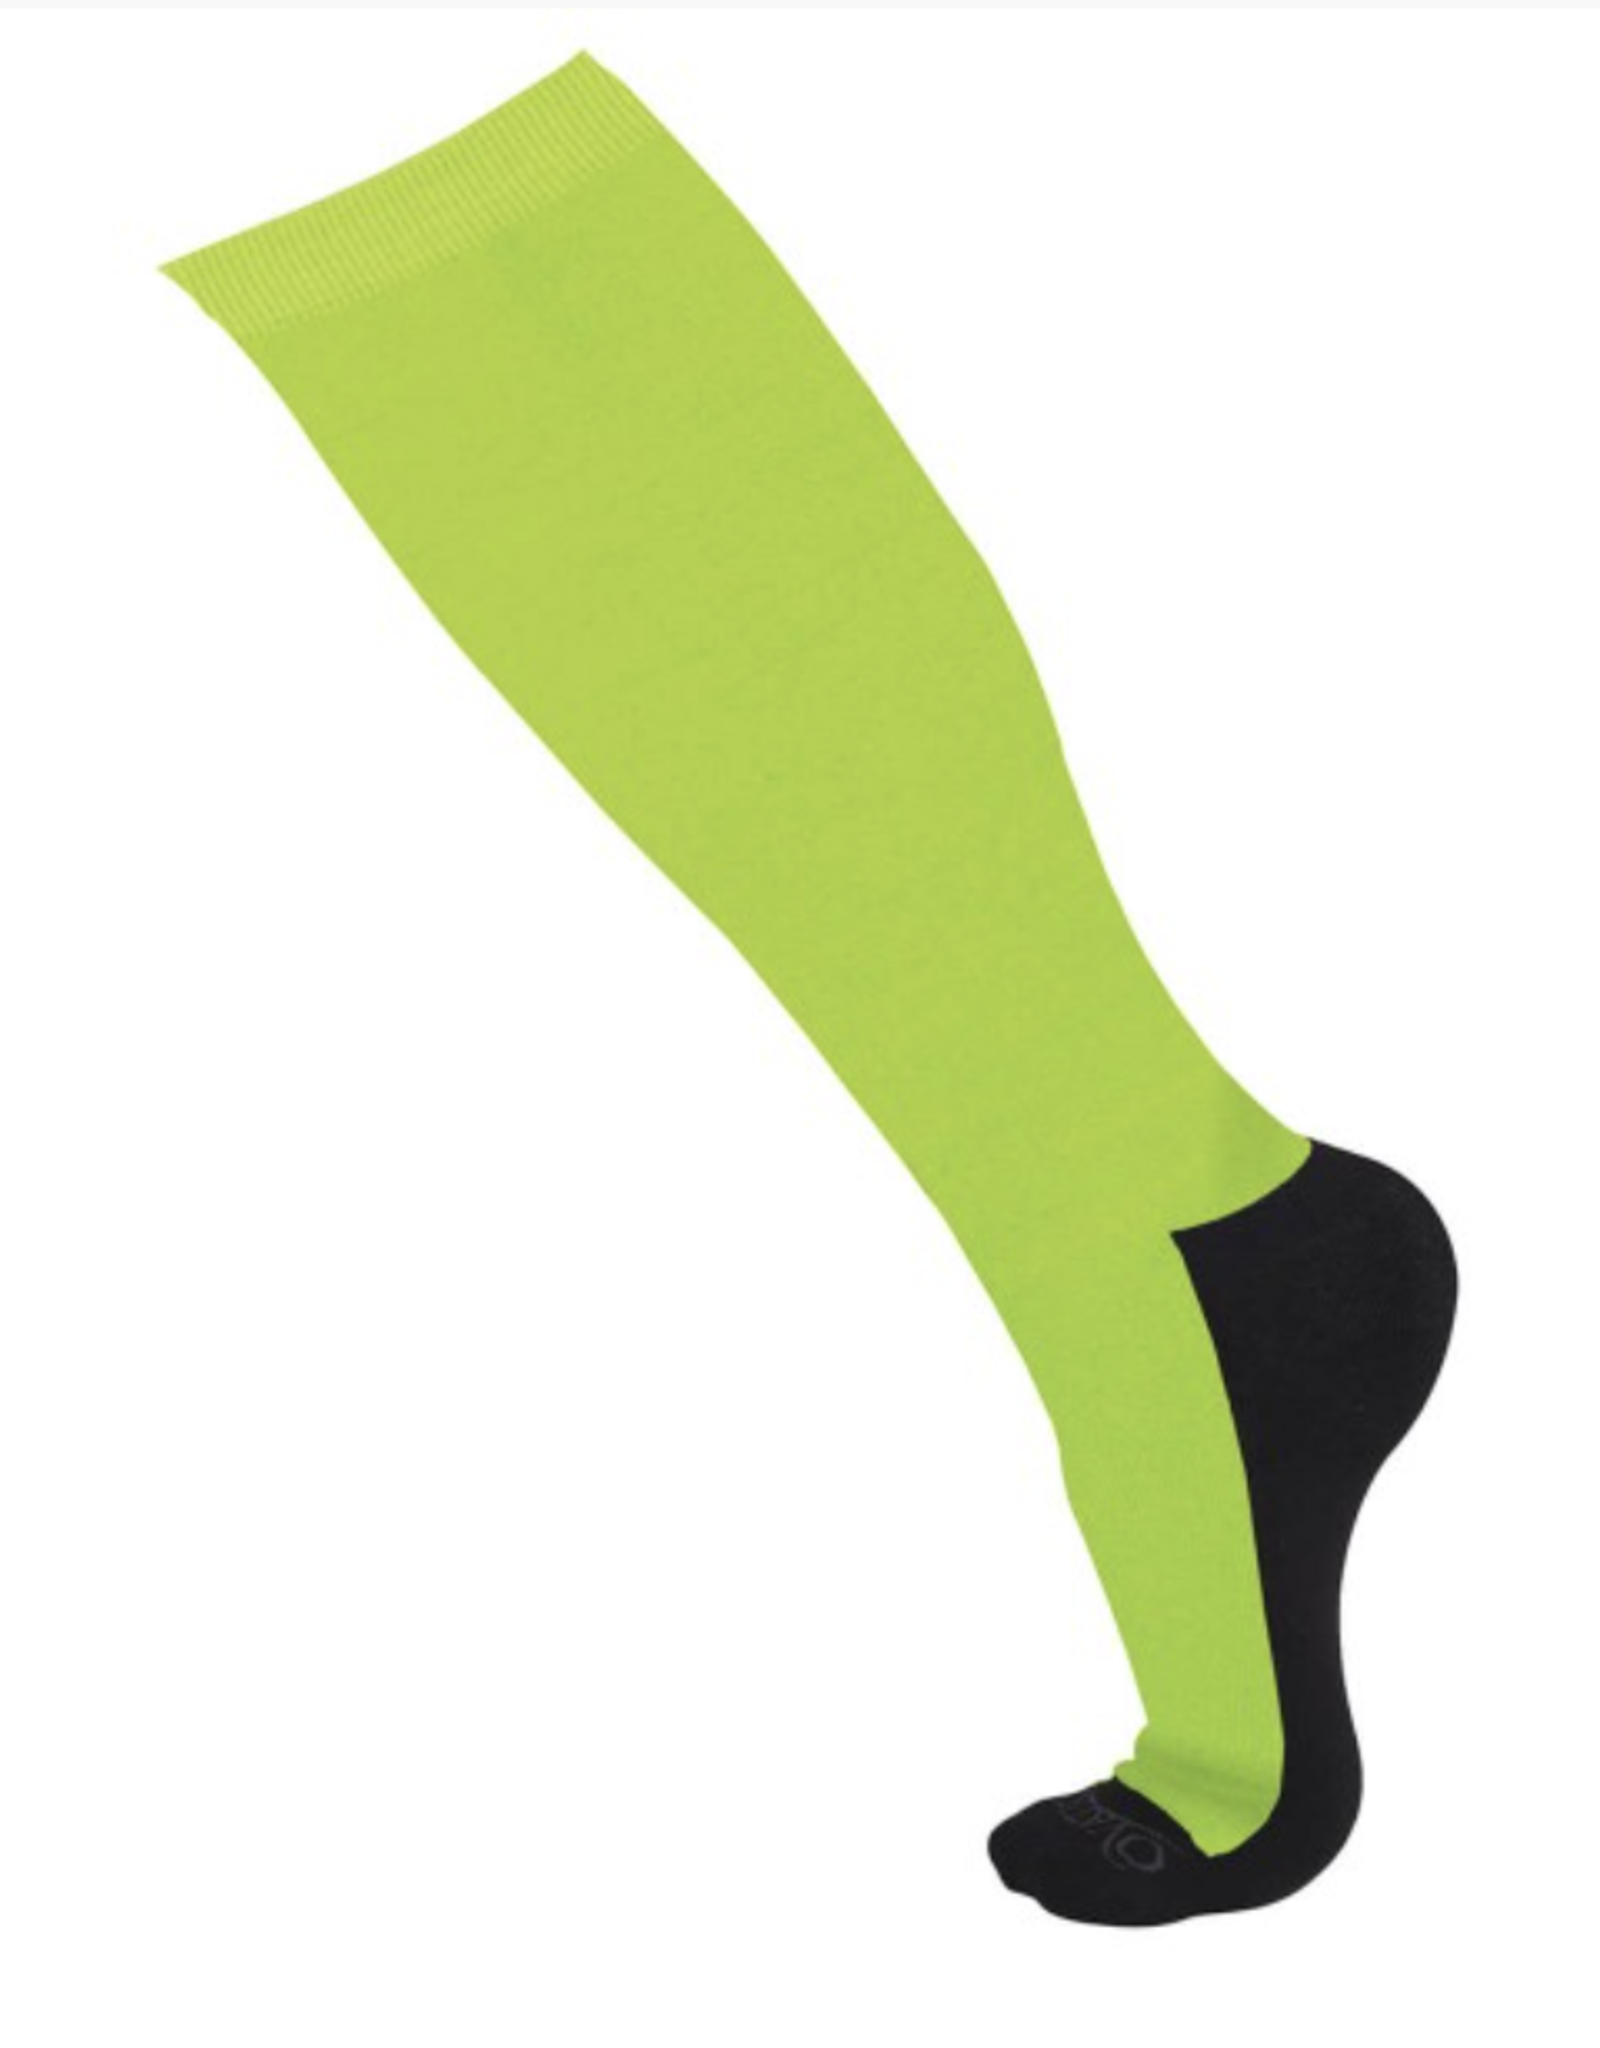 Ovation Ladies' FootZees Sock